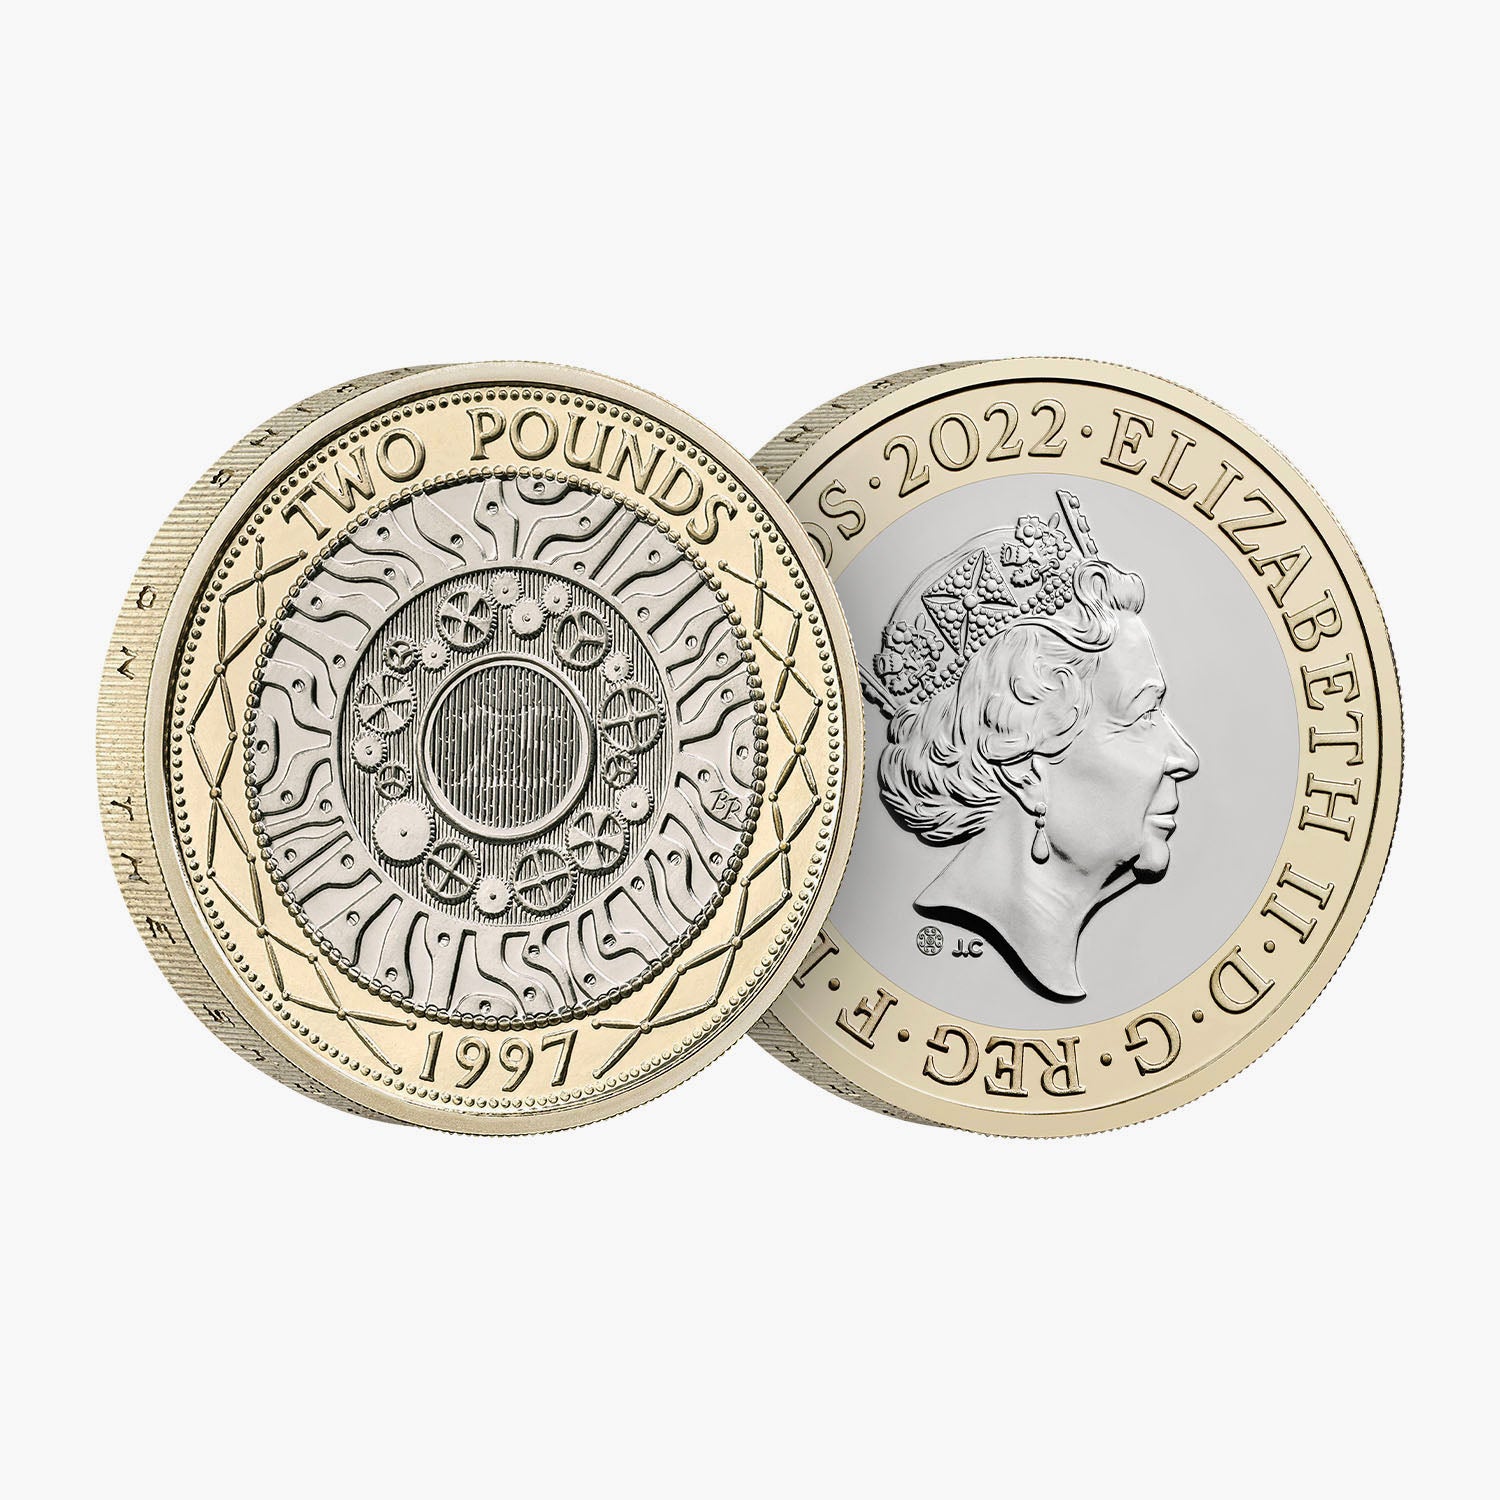 2022 英国ポンド 2 ブリリアント未流通コインの 25 周年を祝う